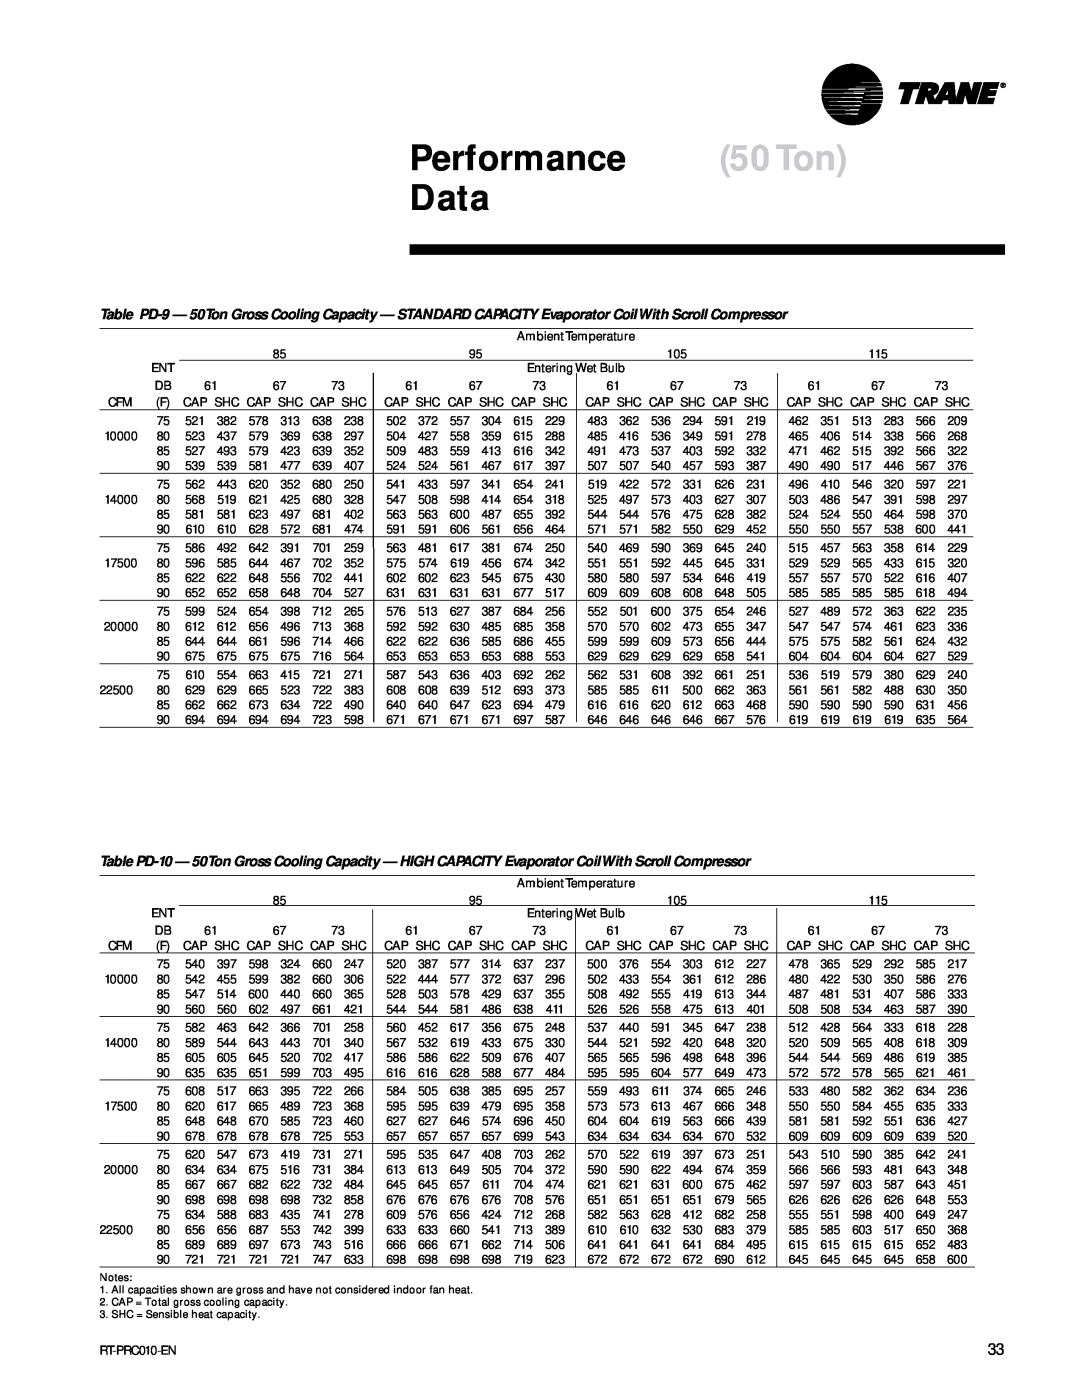 Trane RT-PRC010-EN manual Performance 50Ton Data 